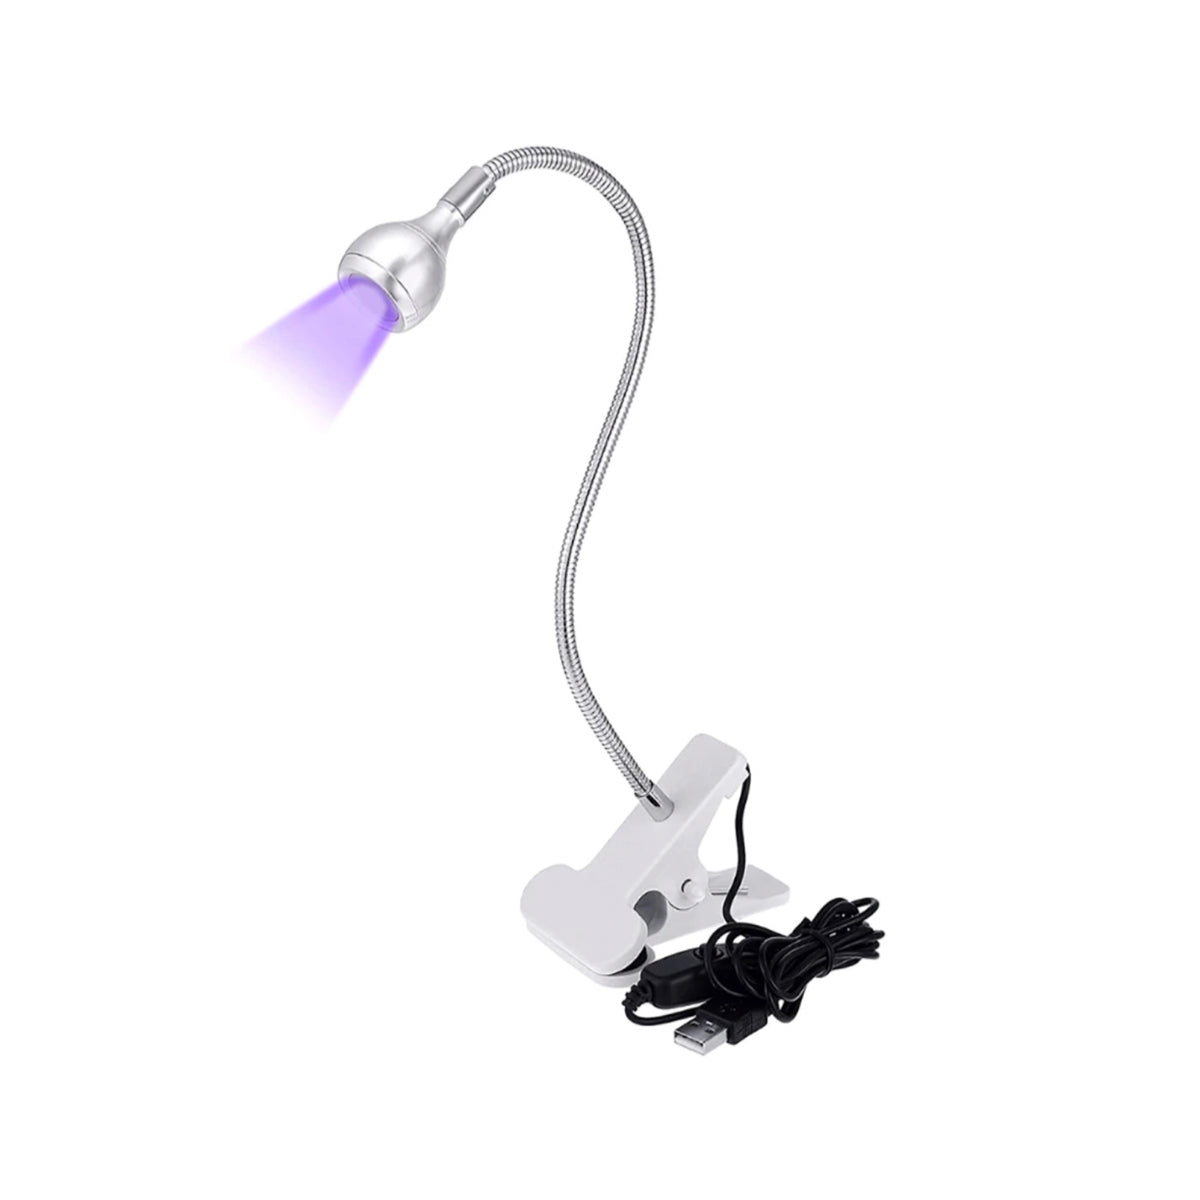 Lampa UV/LED mini Fast Lamp, flexibila , cablu USB, pentru manichiura si pedichiura, culoare Alb/Argintiu